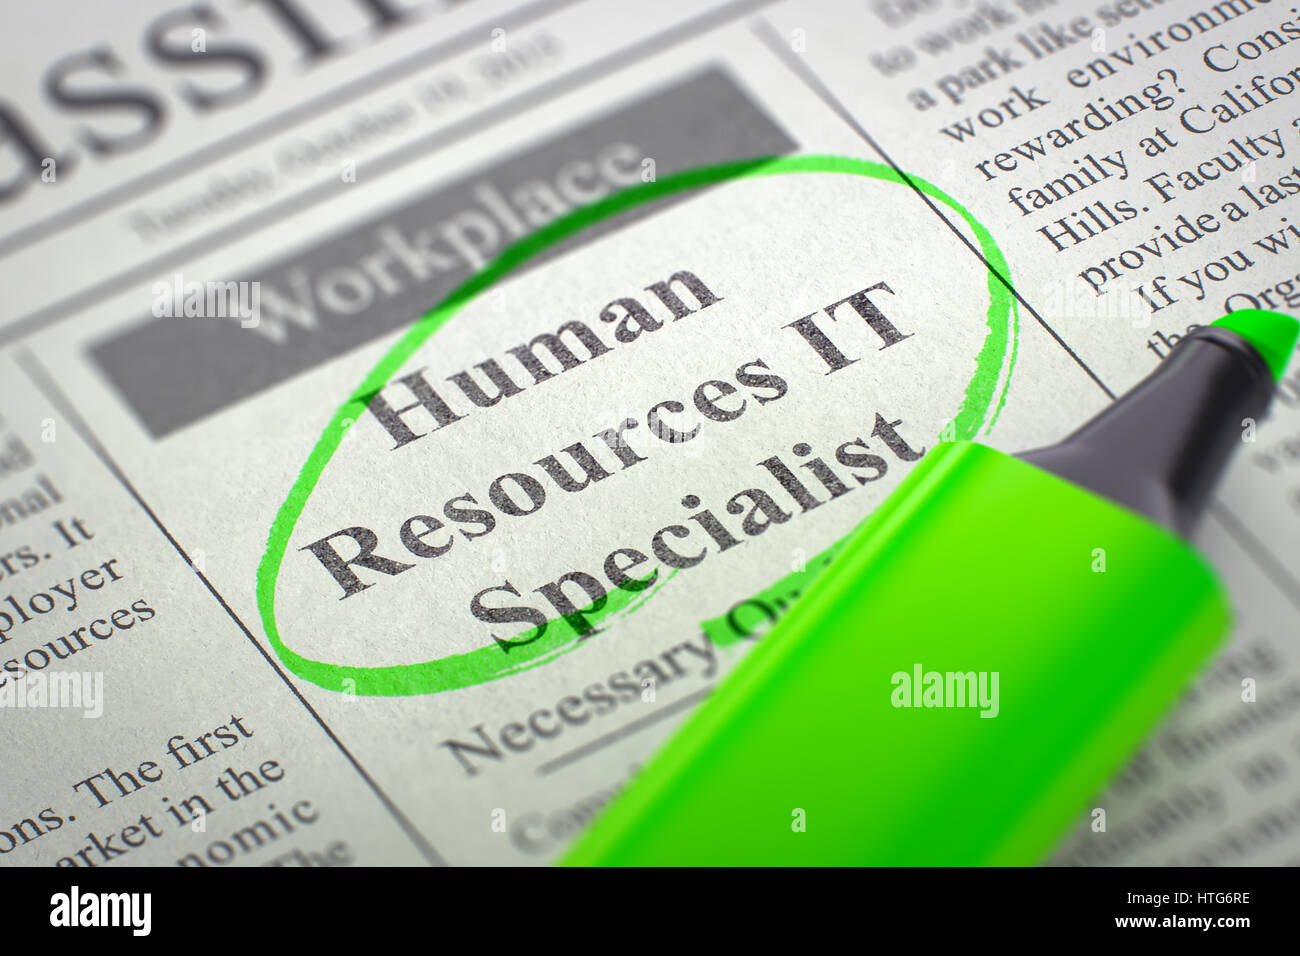 Human Resources IT Spezialist. Zeitung mit der kleinen Werbung, mit einem grünen Textmarker eingekreist. Unscharfes Bild. Selektiven Fokus. Konzept der Aktivit Stockfoto